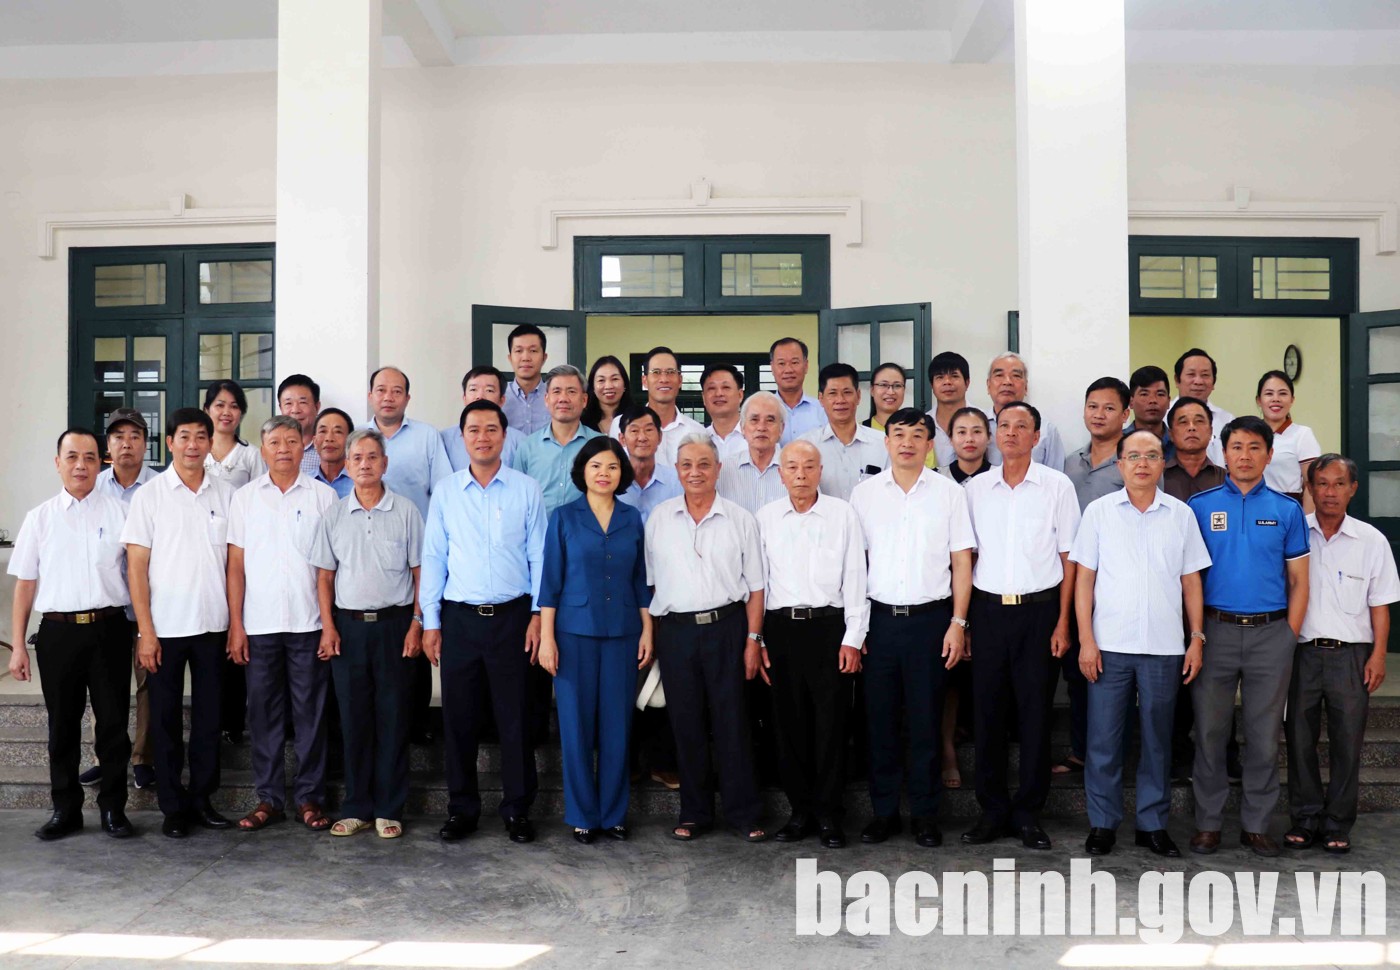 Chủ tịch UBND tỉnh dự sinh hoạt Chi bộ khu phố Thượng, phường Đình Bảng